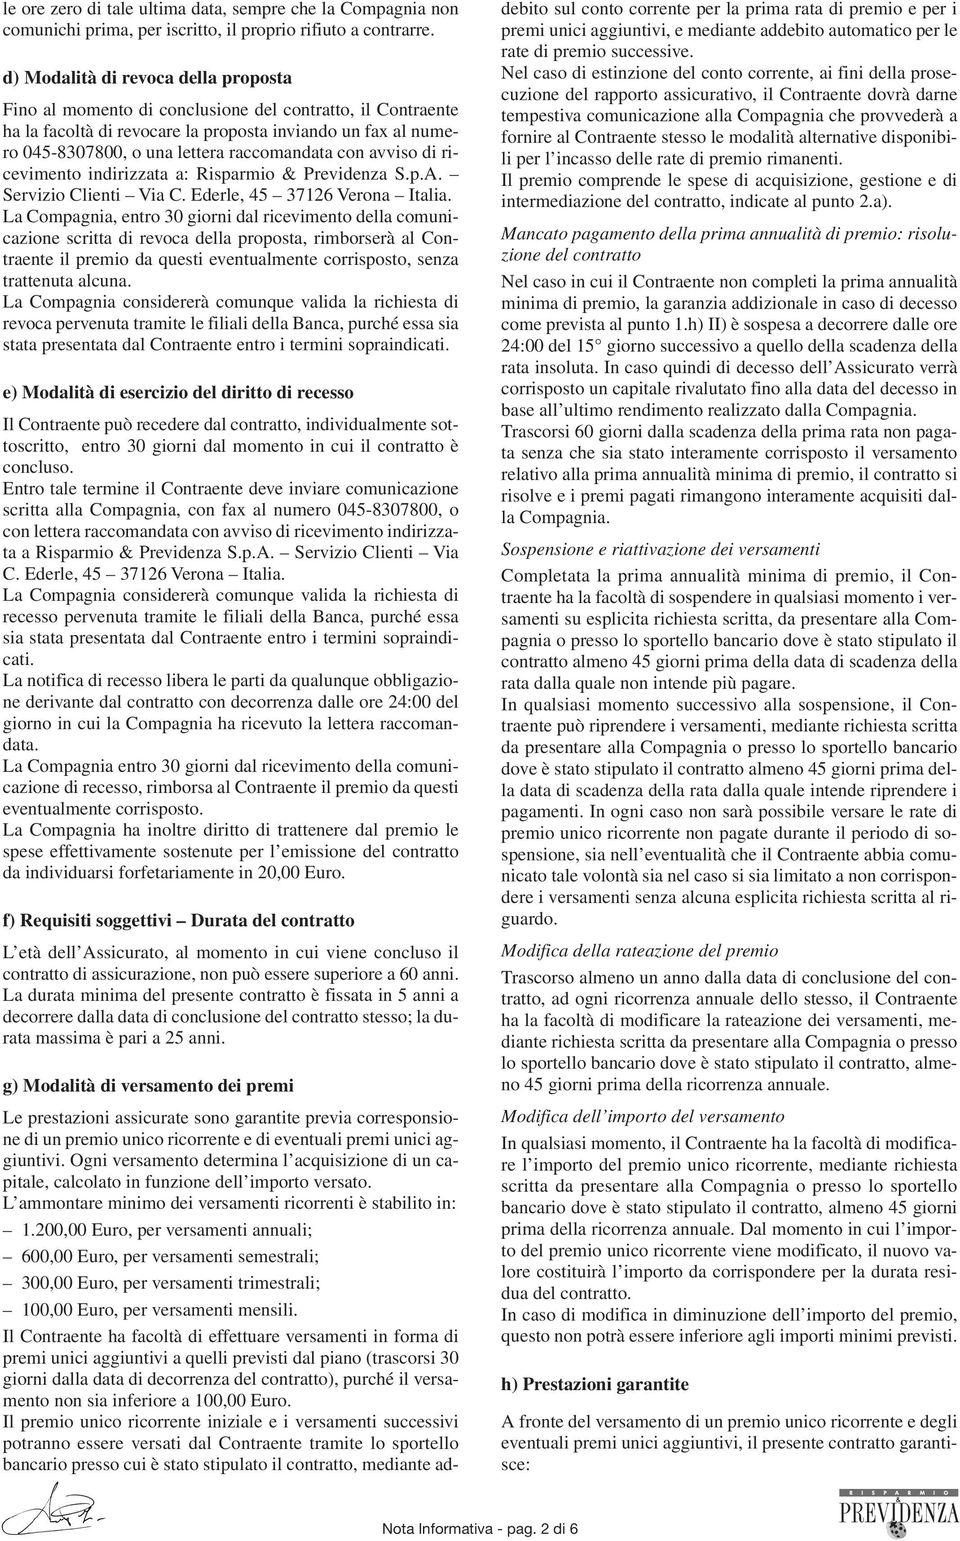 raccomandata con avviso di ricevimento indirizzata a: Risparmio & Previdenza S.p.A. Servizio Clienti Via C. Ederle, 45 37126 Verona Italia.